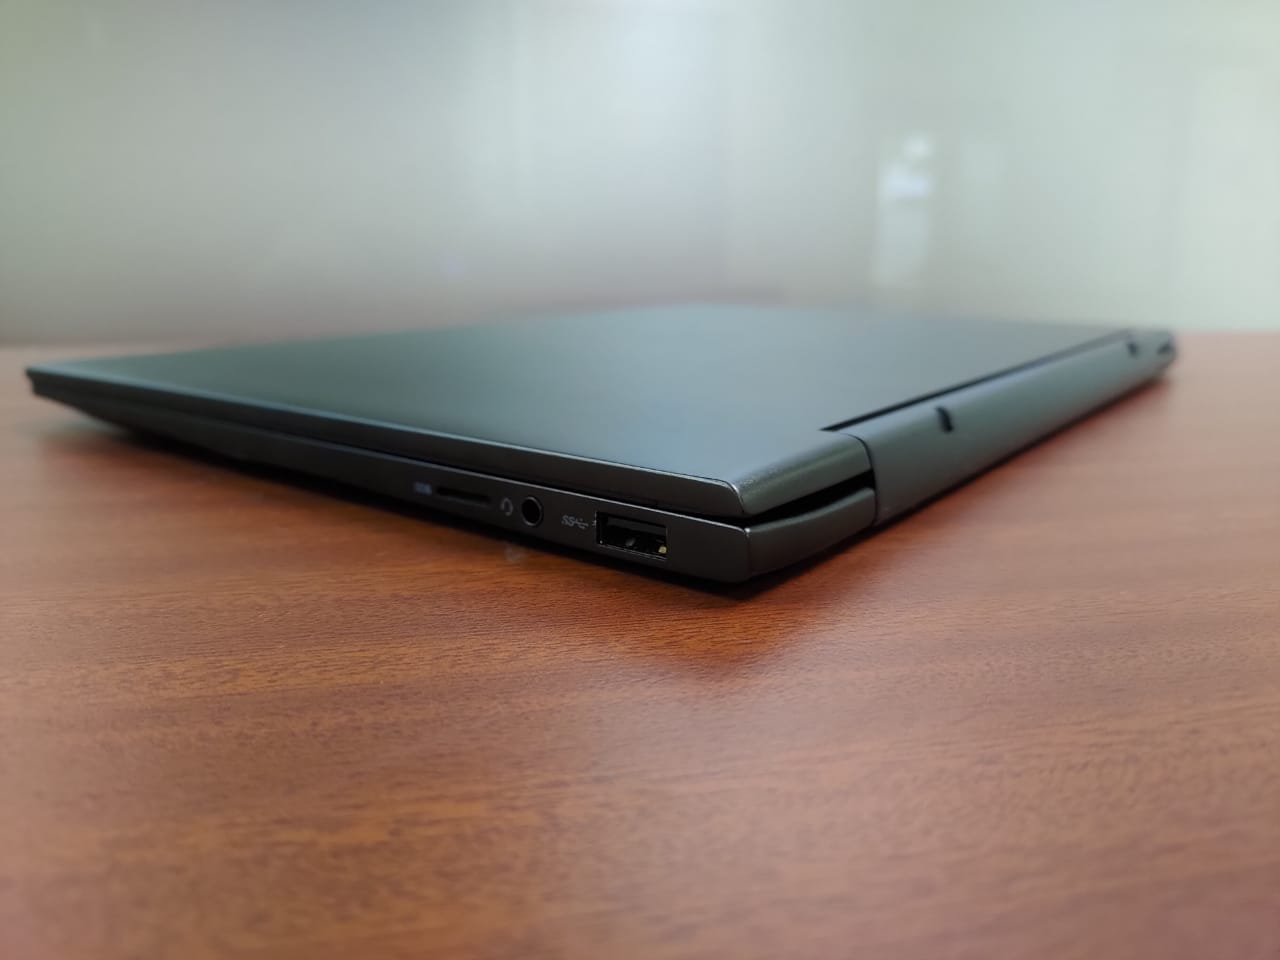 Dell Inspiron 13 7000, Laptop 2-in-1 Menarik Dilengkapi Stylus